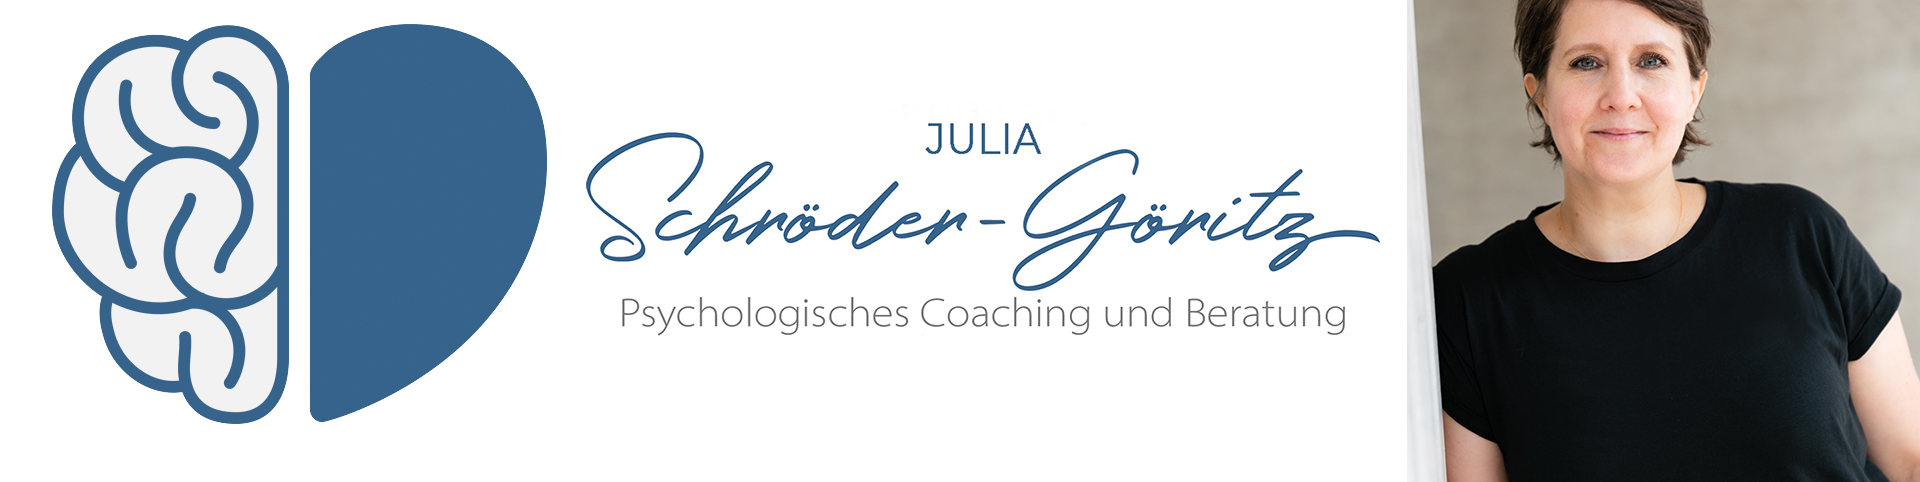 Psychologisches Coaching und Beratung